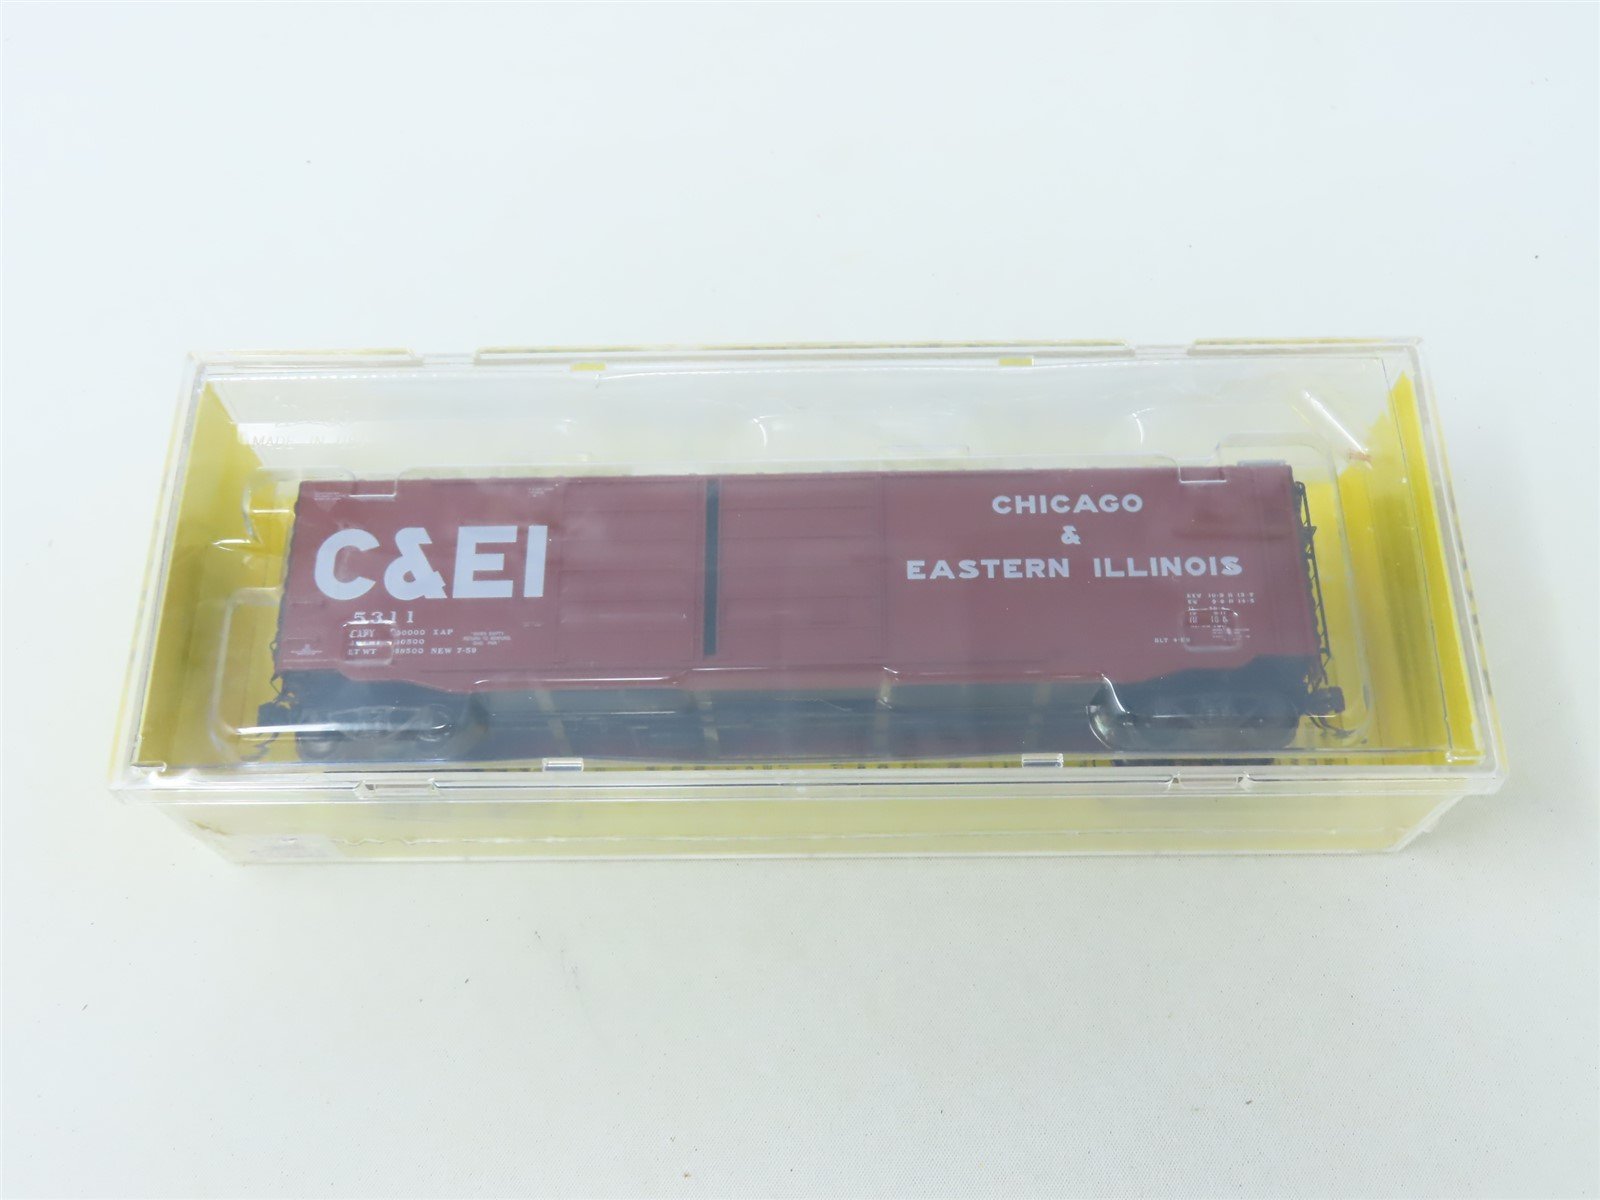 HO Scale Kadee #6704 C&EI Chicago & Eastern Illinois 50' Box Car #5311 - Sealed